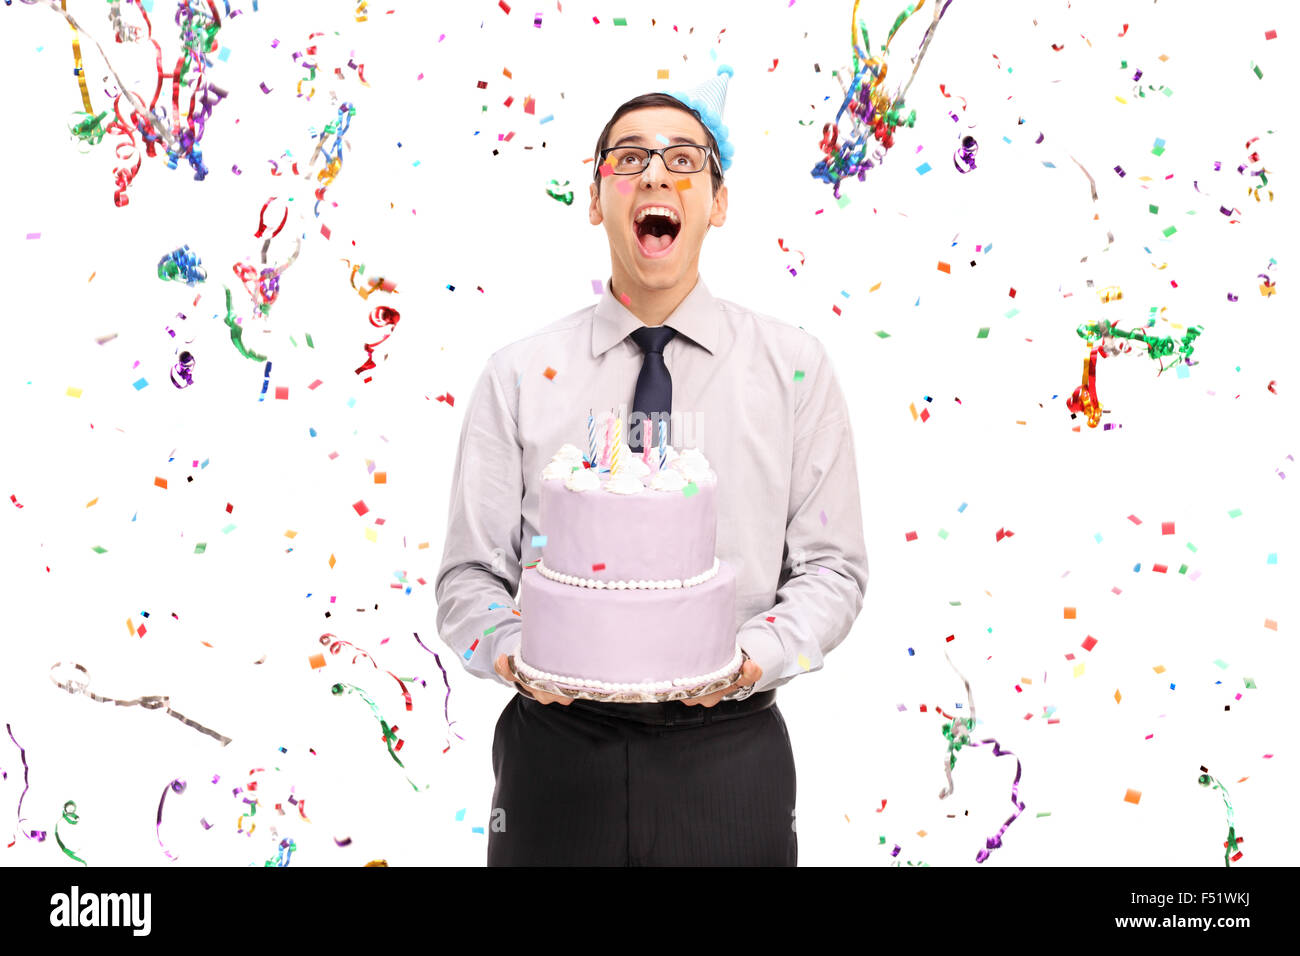 Studioaufnahme von einem erfreut Mann hält einen Geburtstagskuchen und Blick auf die Konfetti Luftschlangen fliegen um ihn herum Stockfoto